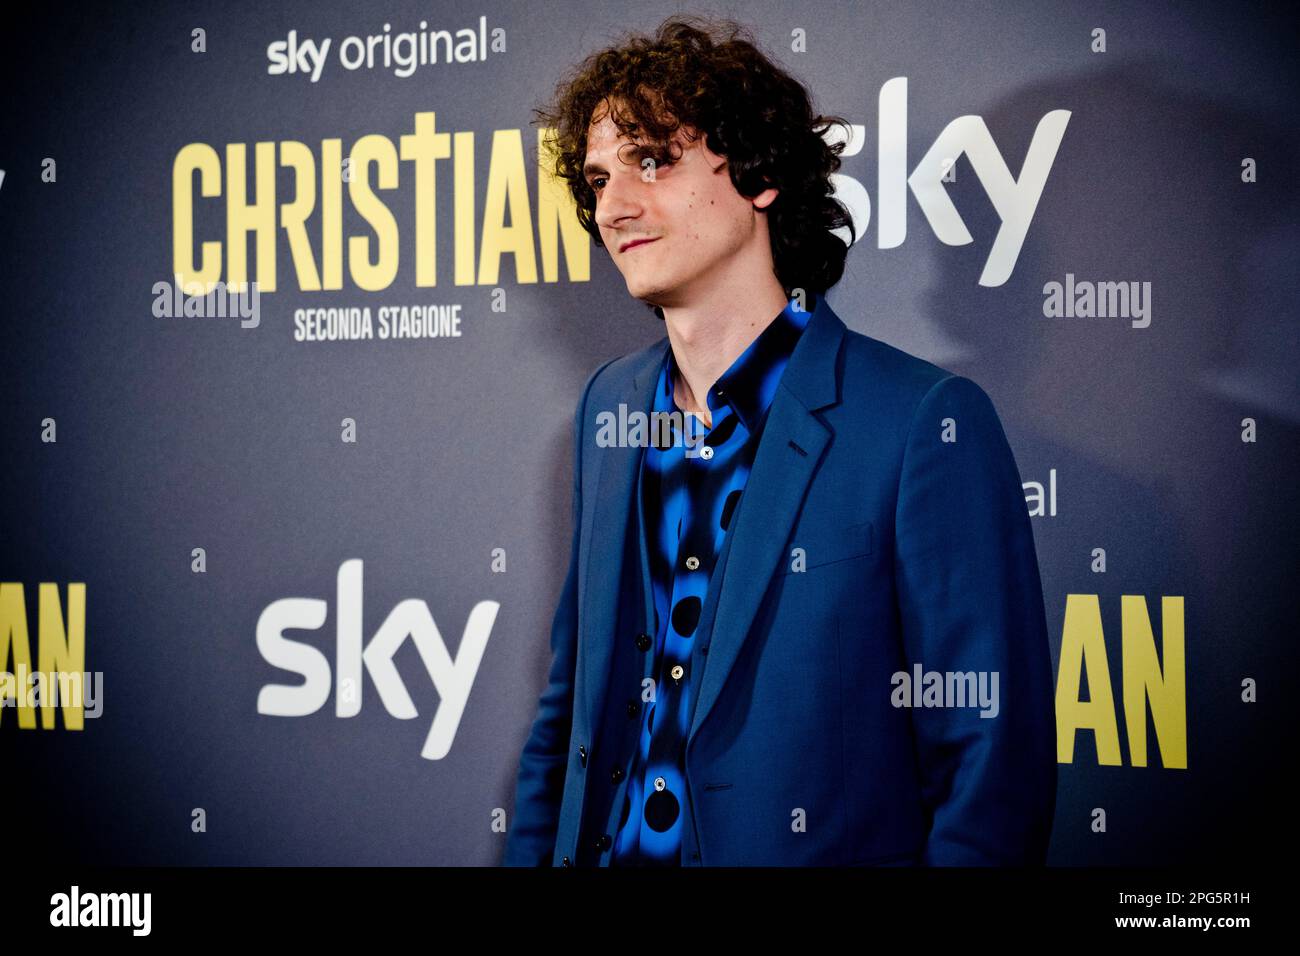 Rome, Italy, 20th March 2023, Antonio Bannò attends the premiere of 'Christian - seconda stagione' at Cinema Barberini (Photo credits: Giovanna Onofri Stock Photo